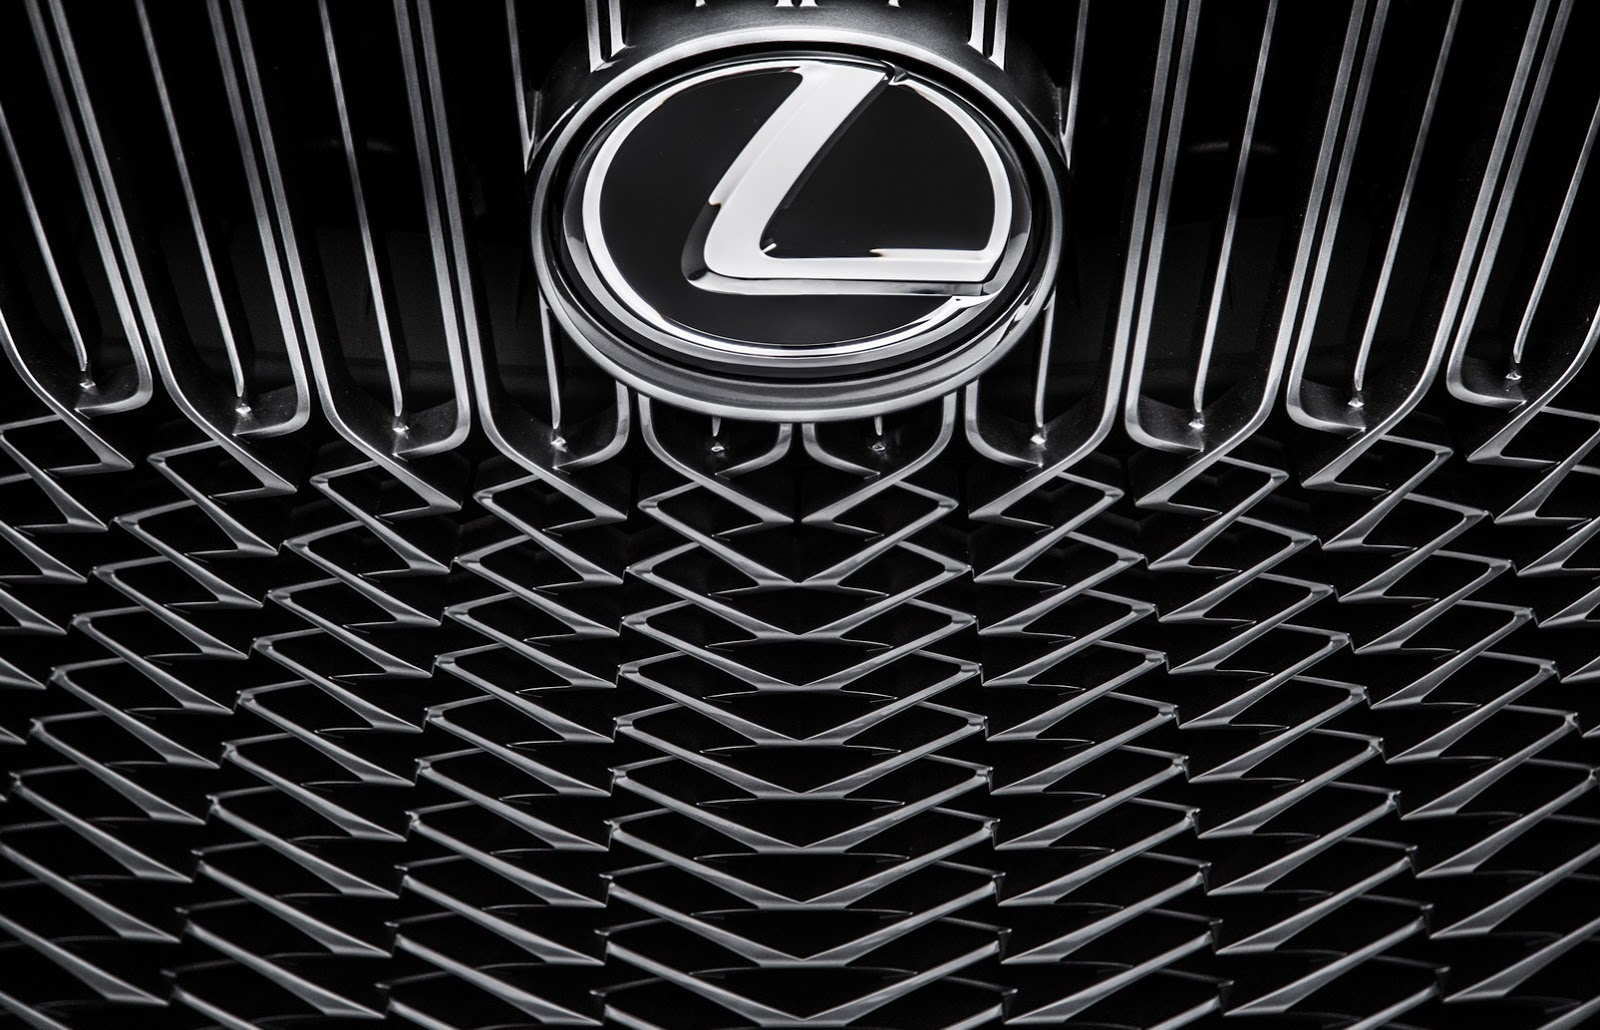 Lexus LF-C2 Concept, 2014 - Grille and Badge Design